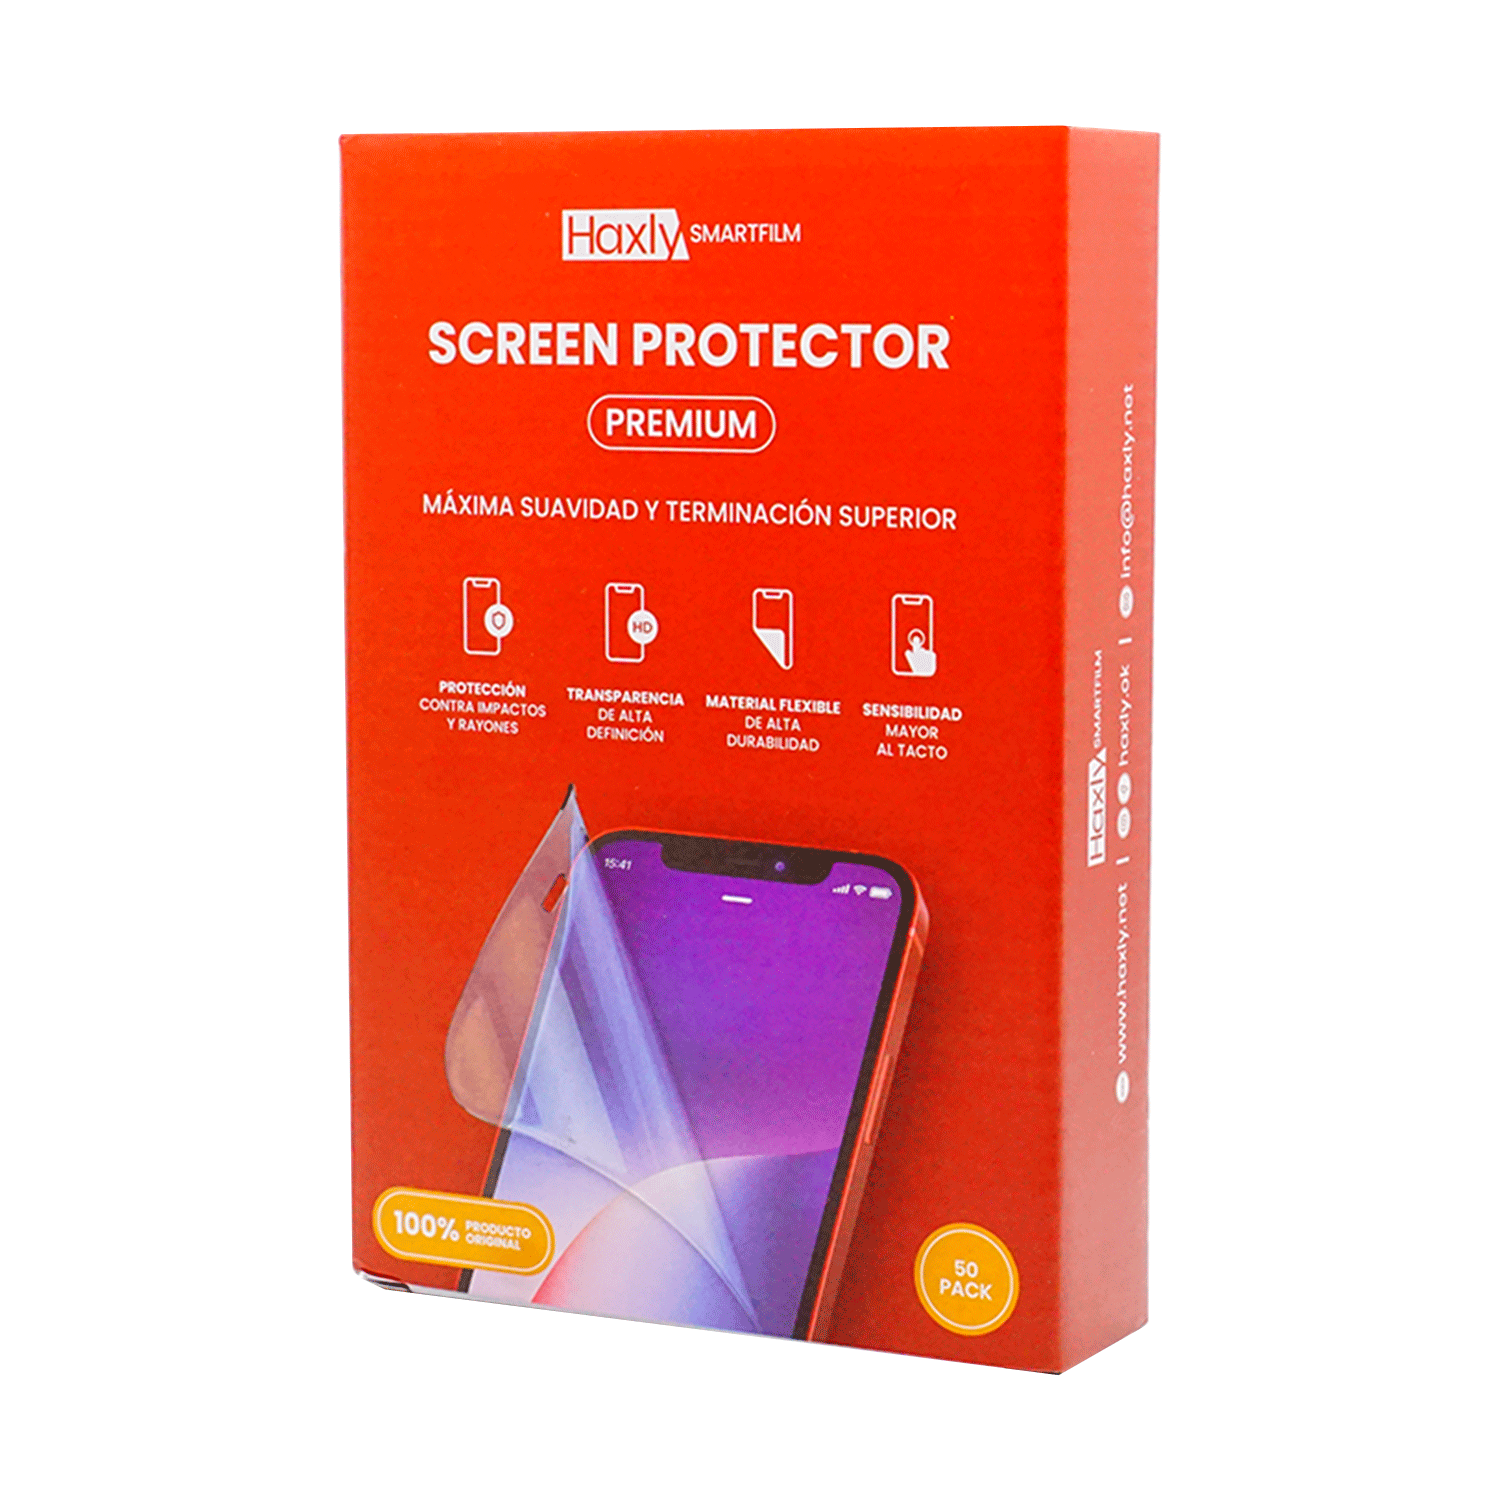 Protetor de Tela Haxly Smartfilm para Celular Premium (50 Unidades)(HX-F0014-50)